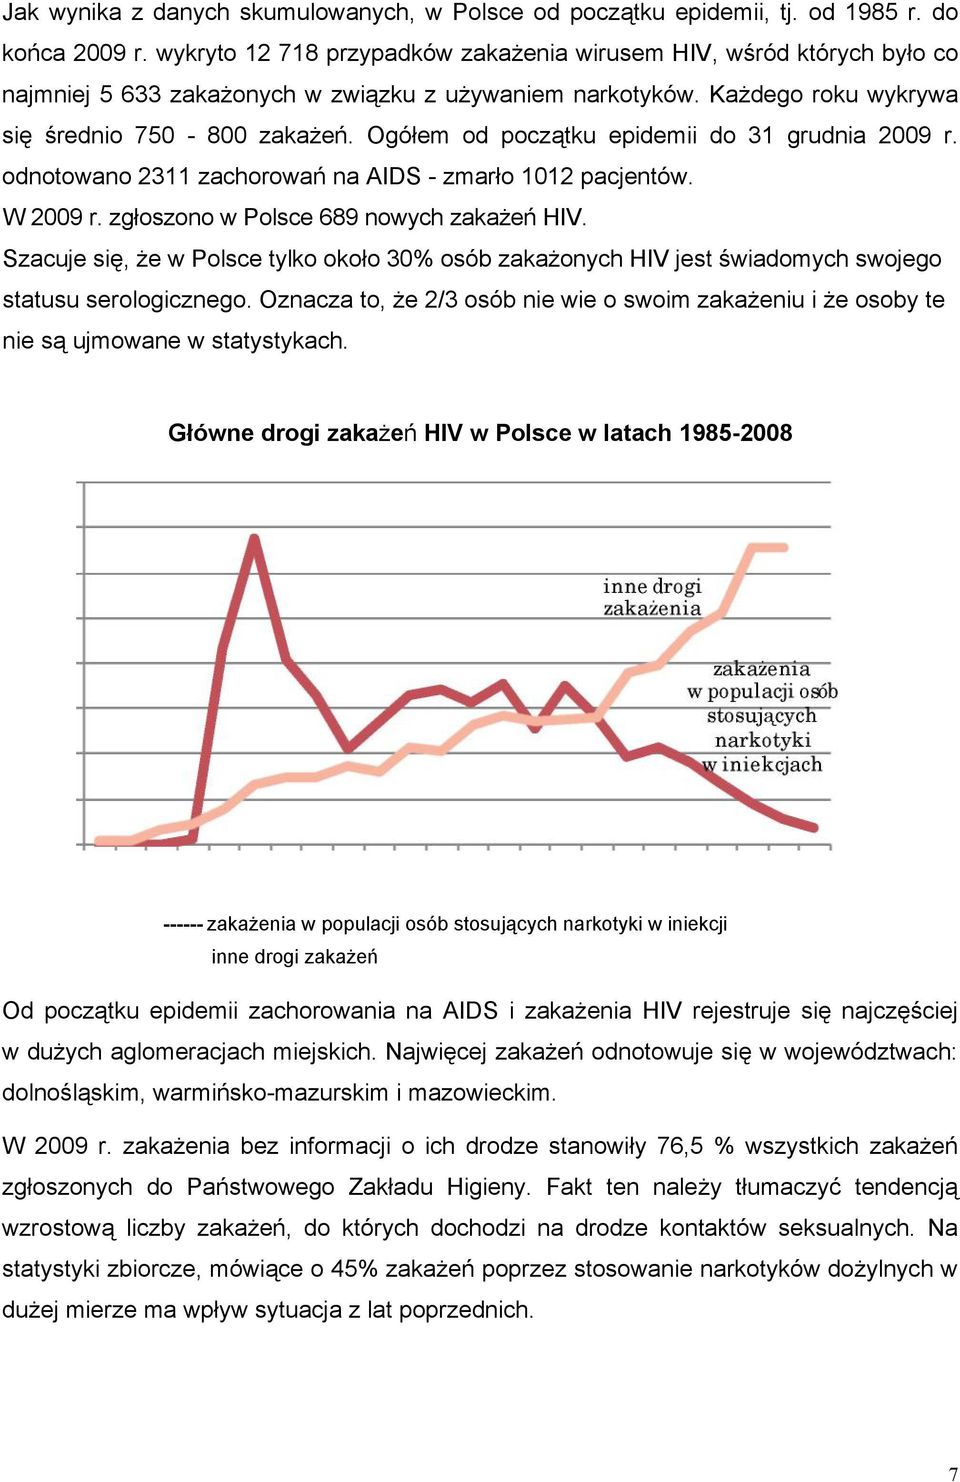 Ogółem od początku epidemii do 31 grudnia 2009 r. odnotowano 2311 zachorowań na AIDS - zmarło 1012 pacjentów. W 2009 r. zgłoszono w Polsce 689 nowych zakażeń HIV.